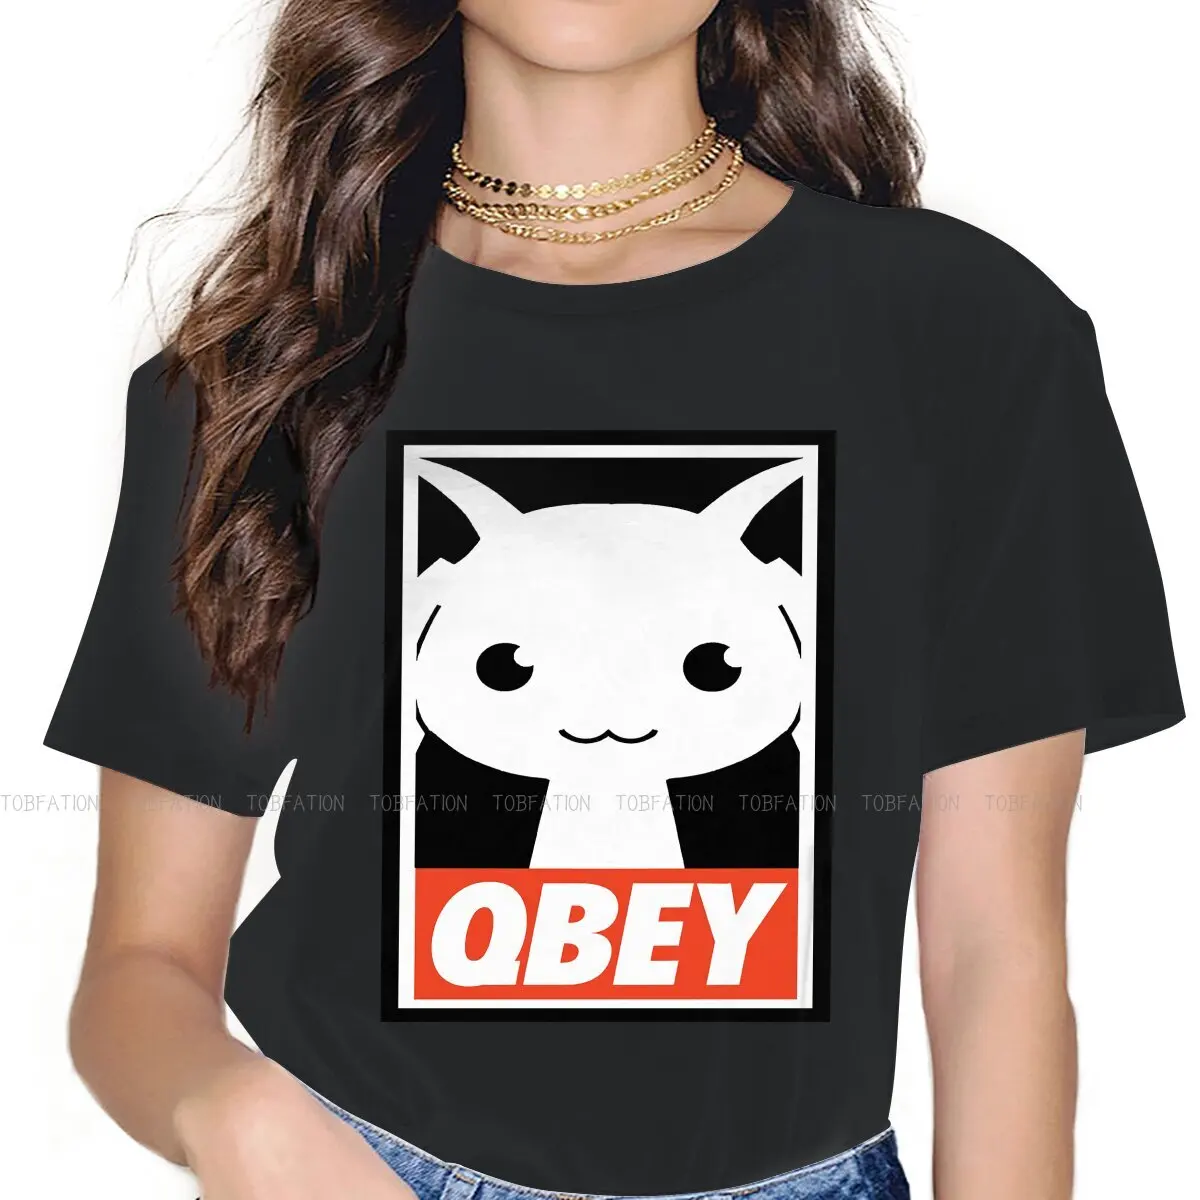 

Qbey Essential TShirt For Women Puella Magi Madoka Magica Anime Tees Fashion Lady T Shirt 5XL Soft Print Loose